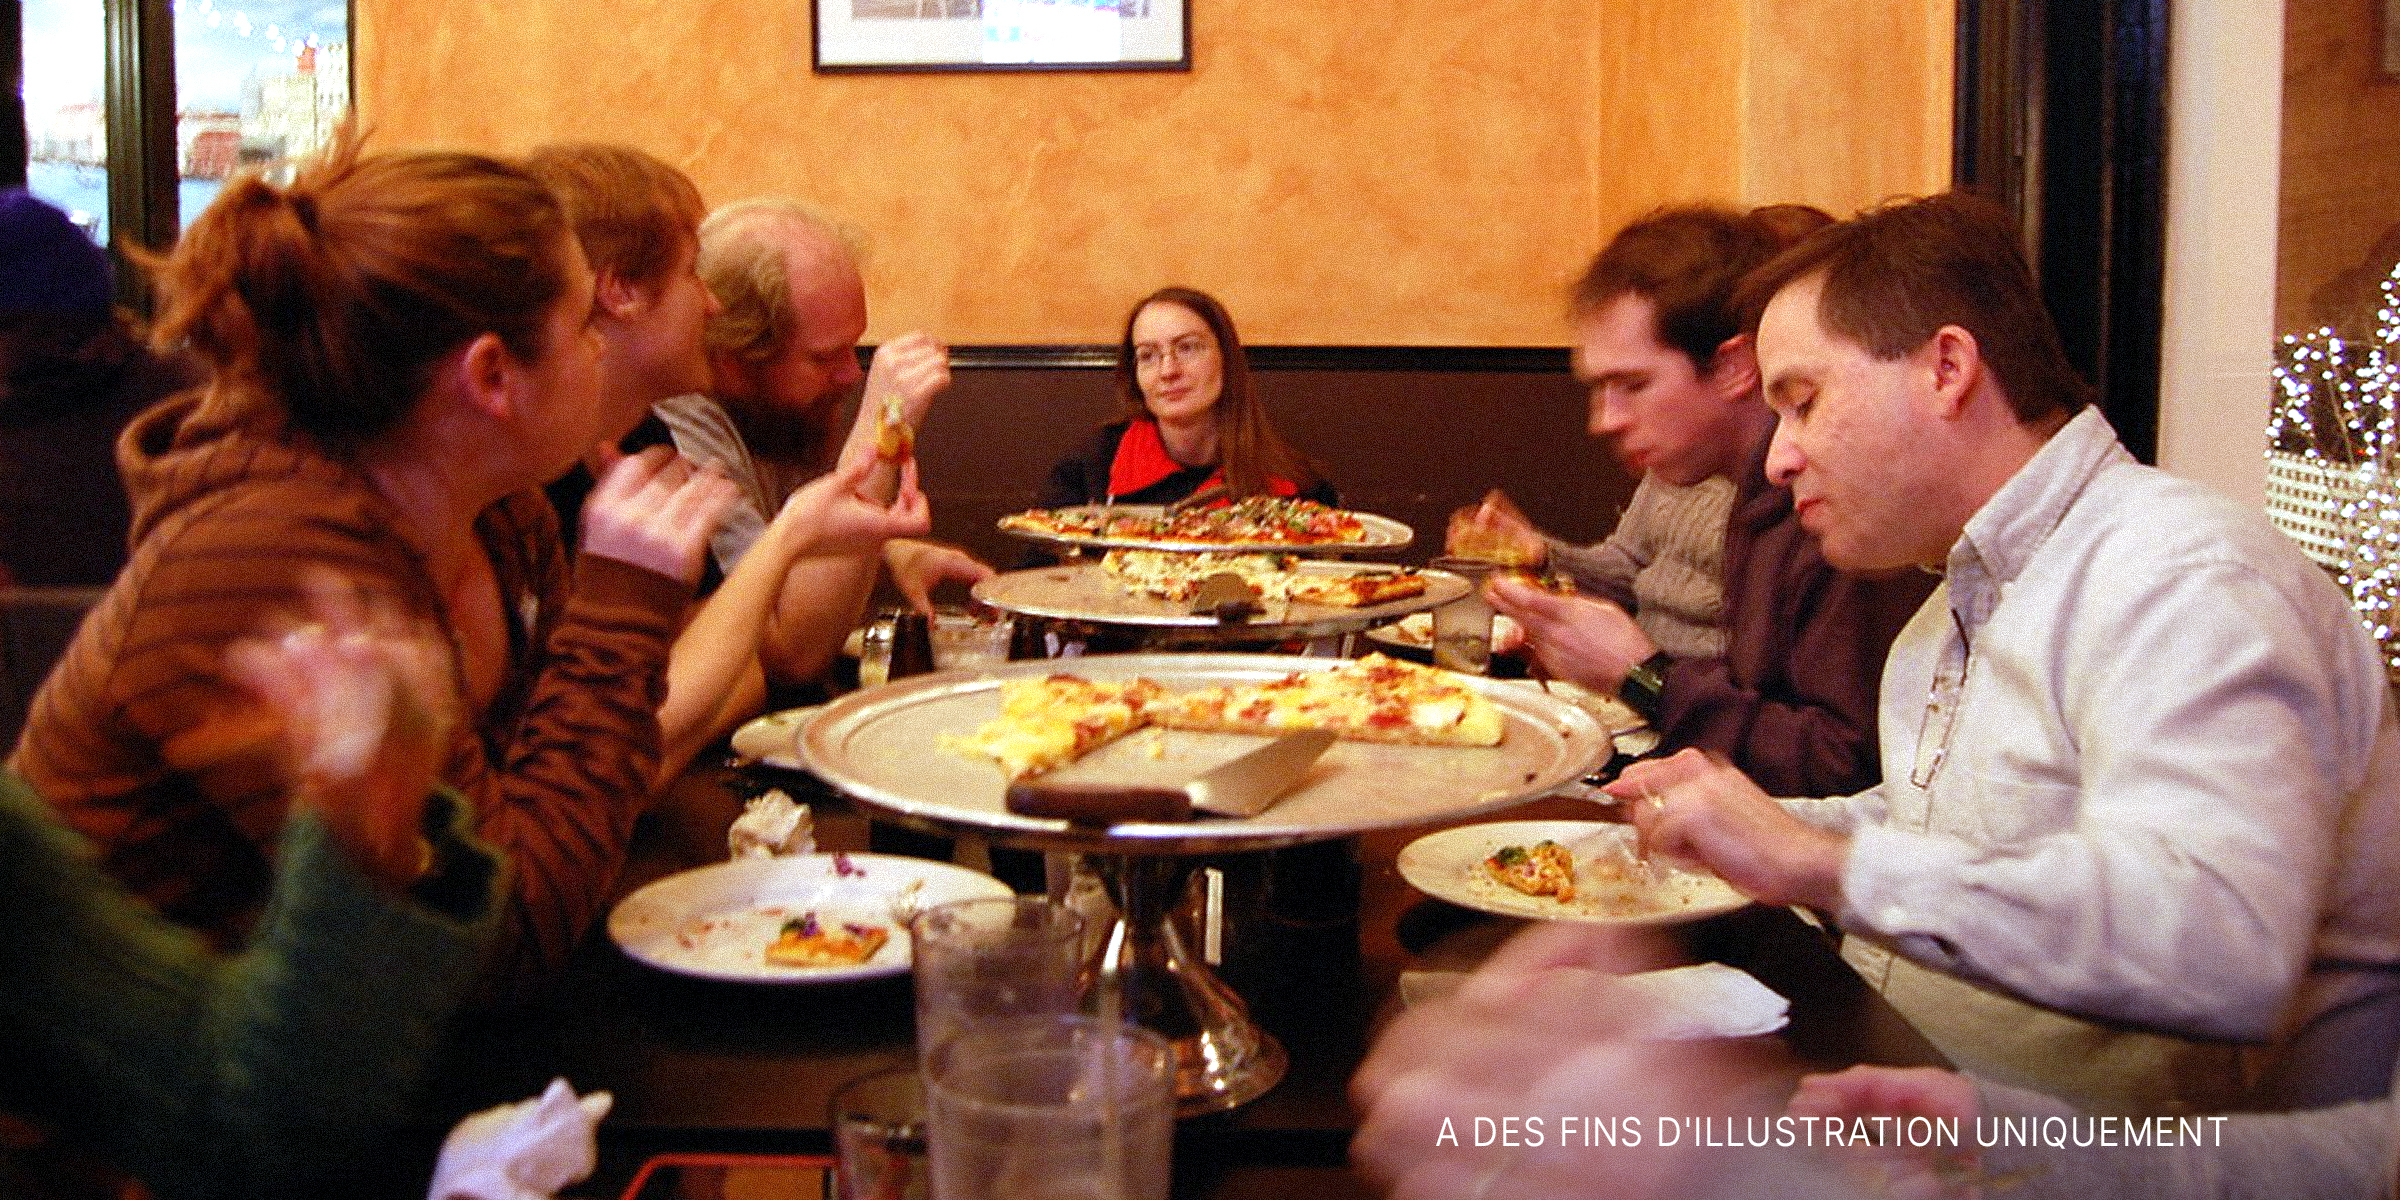 Des gens assis autour d'une table et mangeant | Source : Flickr